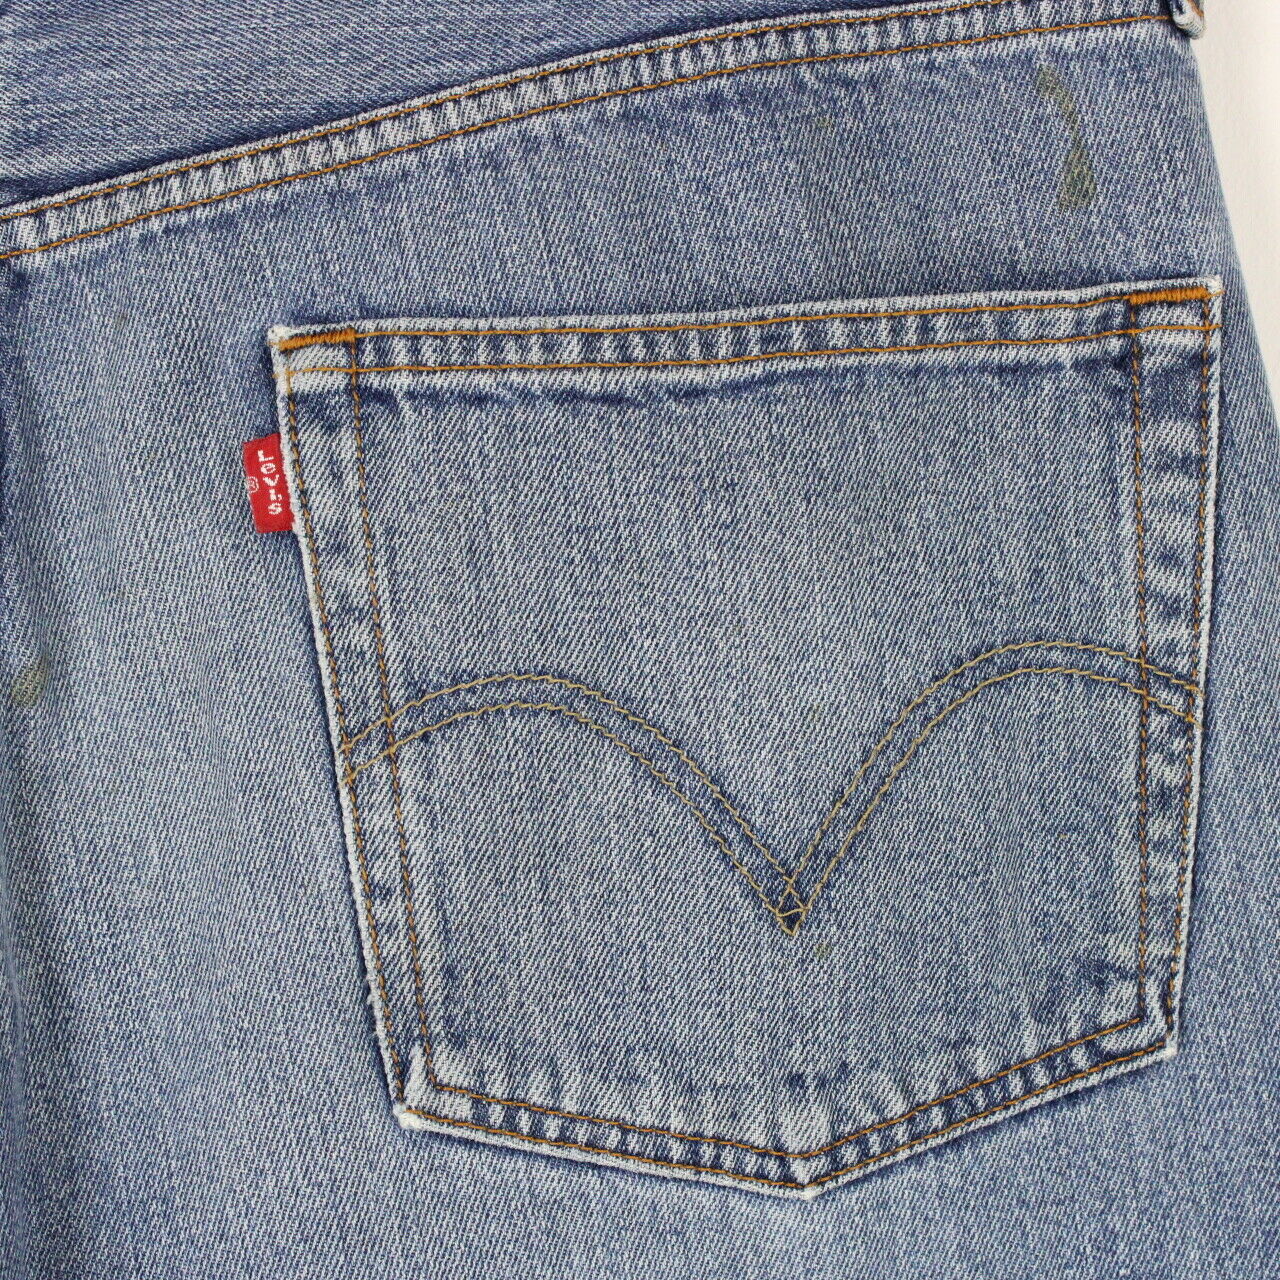 Mens LEVIS 501 Jeans Mid Blue | W38 L30